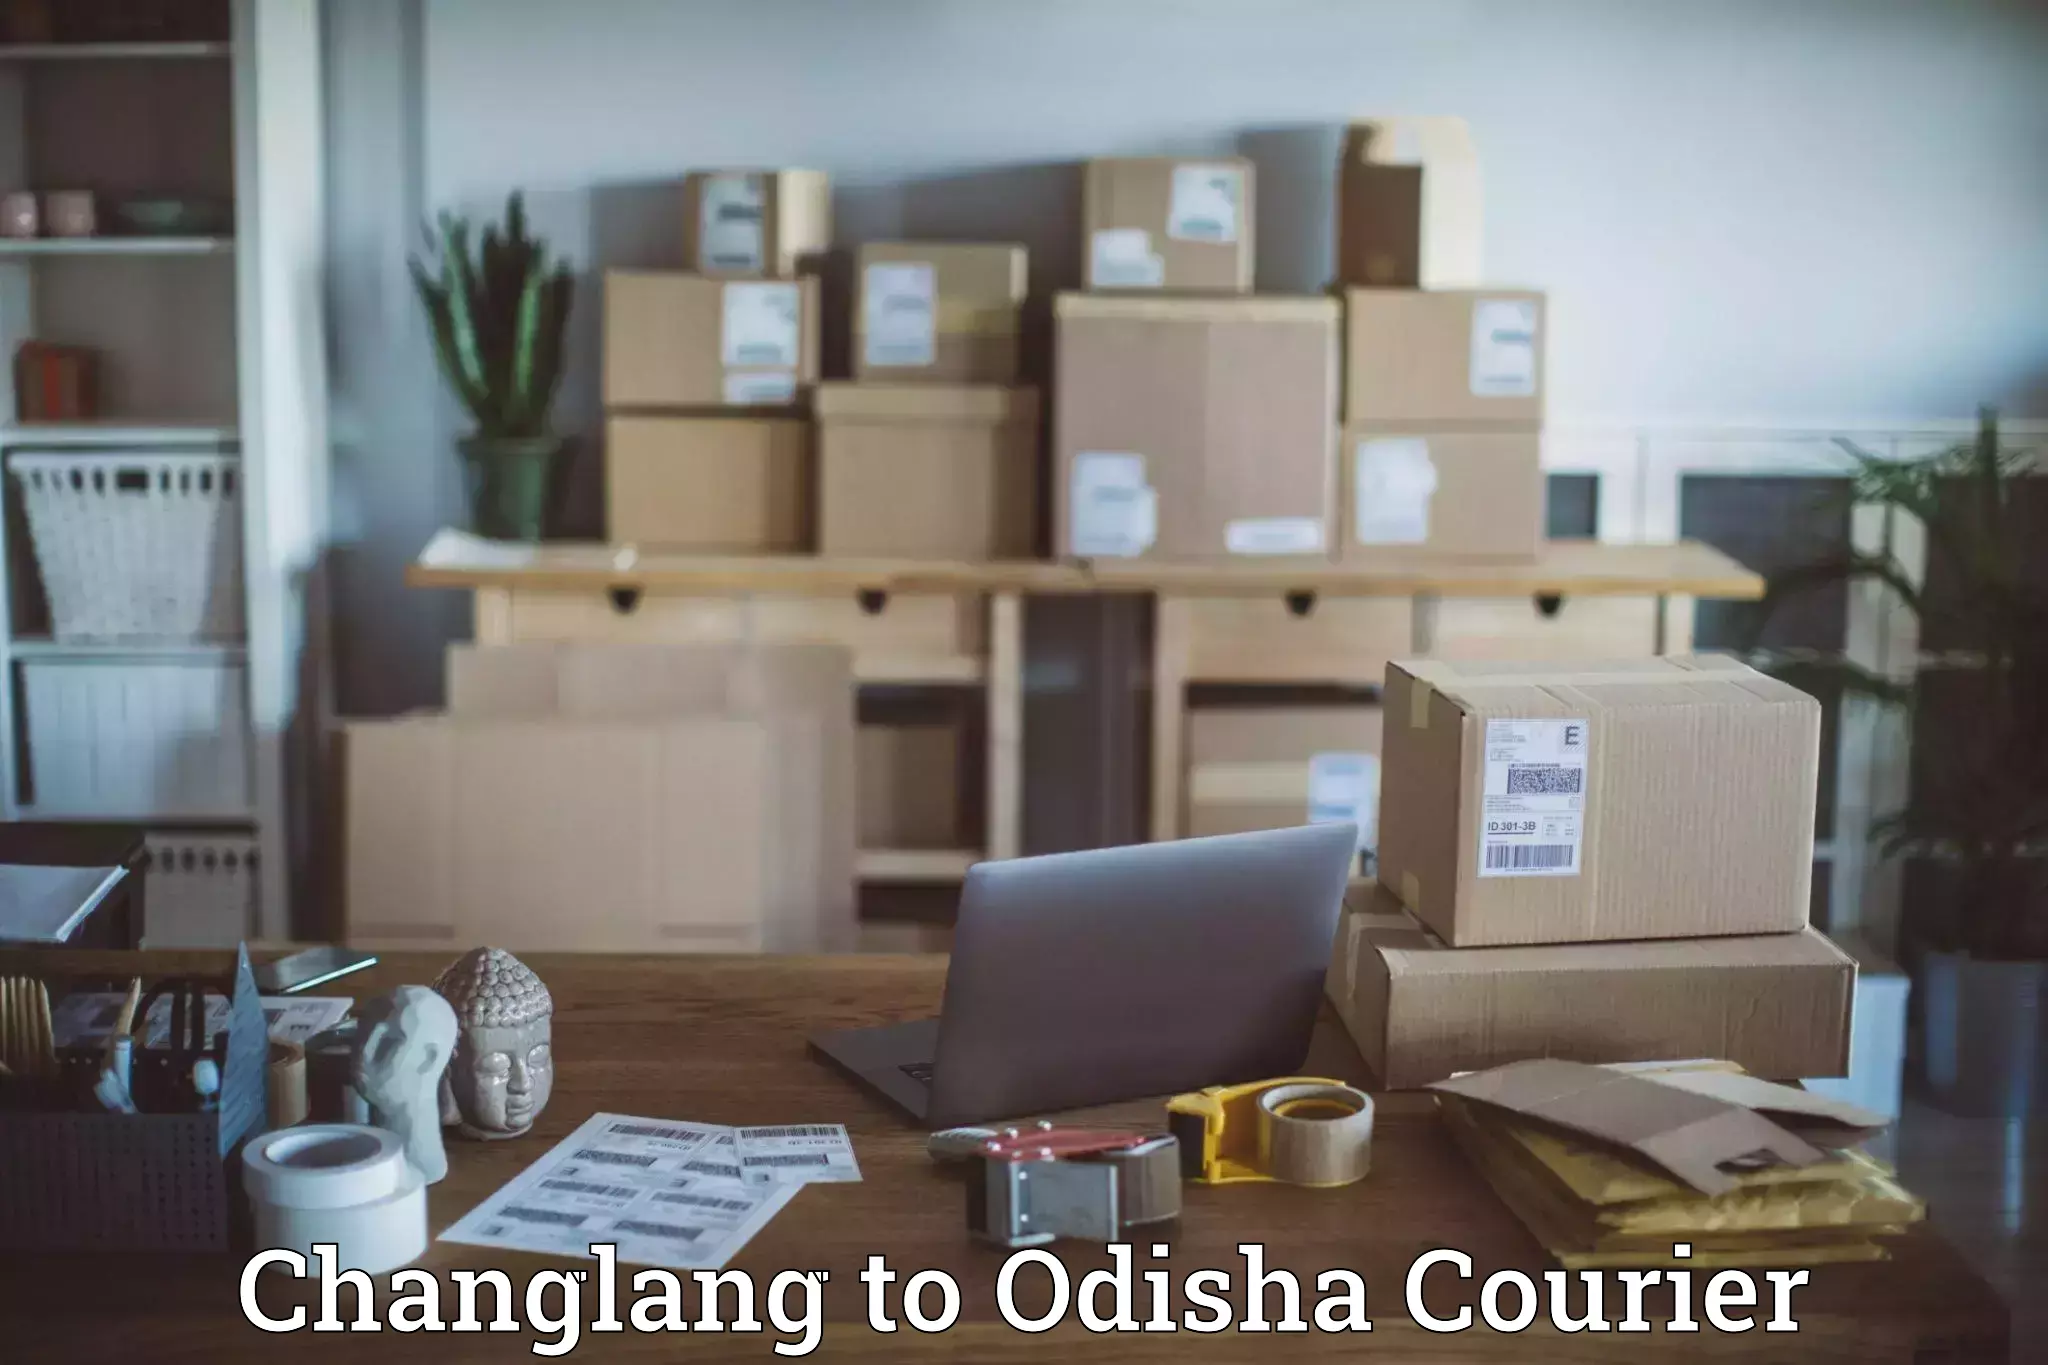 Door-to-door shipment Changlang to Kalinga Institute of Industrial Technology Bhubaneswar